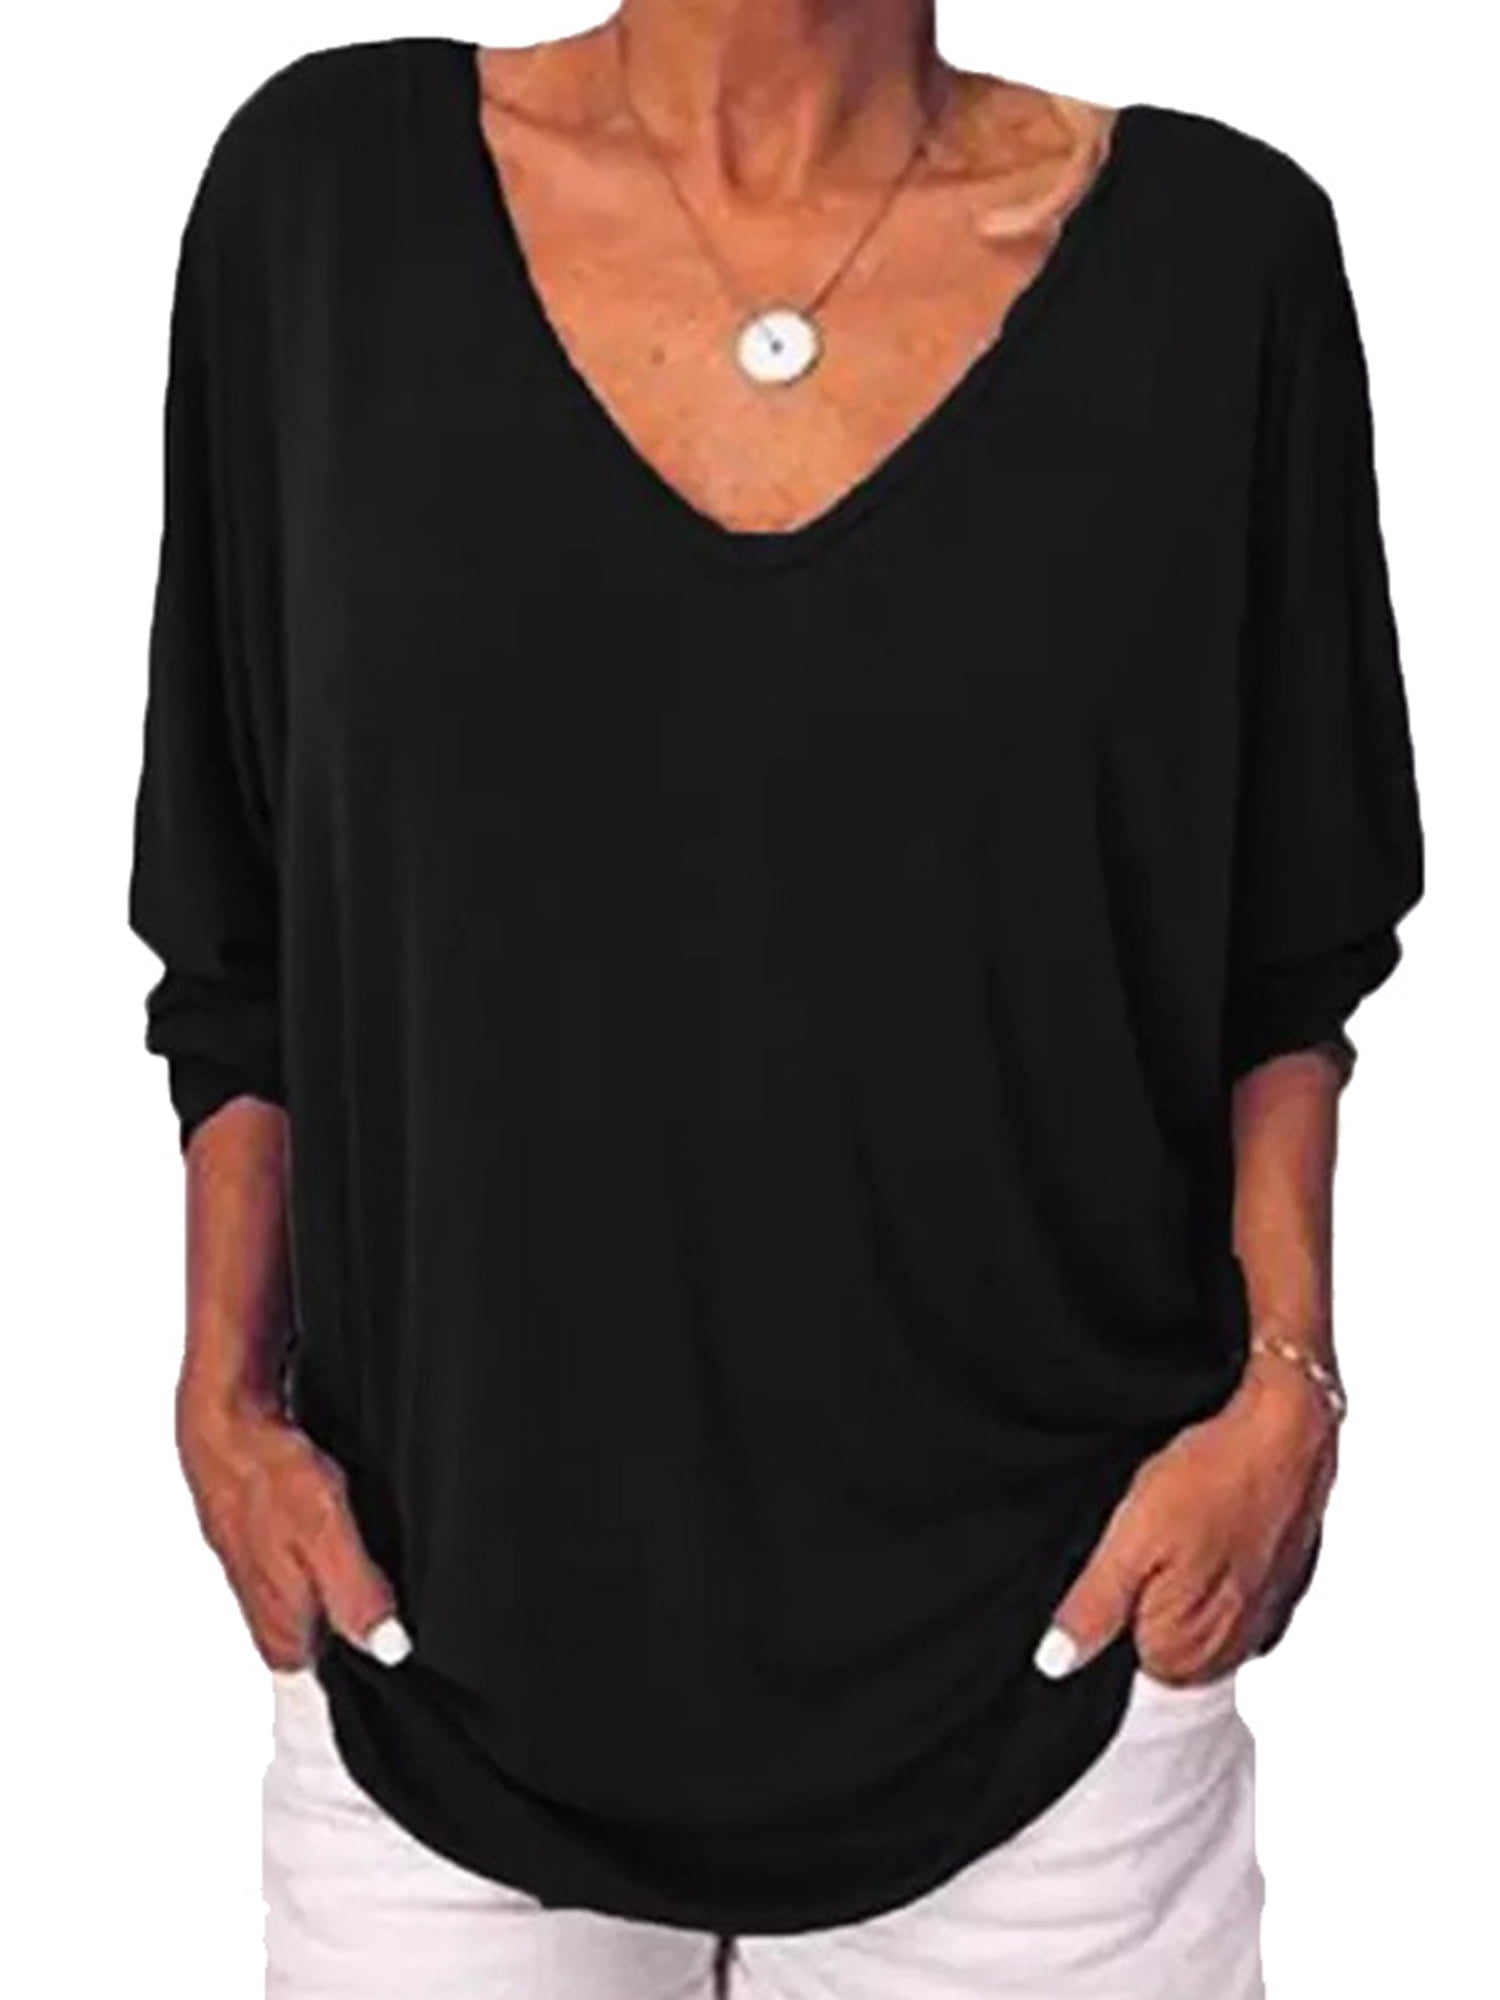 Sttech1 Women Blouse 3/4 Sleeve Batwing Sleeve Asymmetry Fold Round Neck Shirt Tops T-Shirt